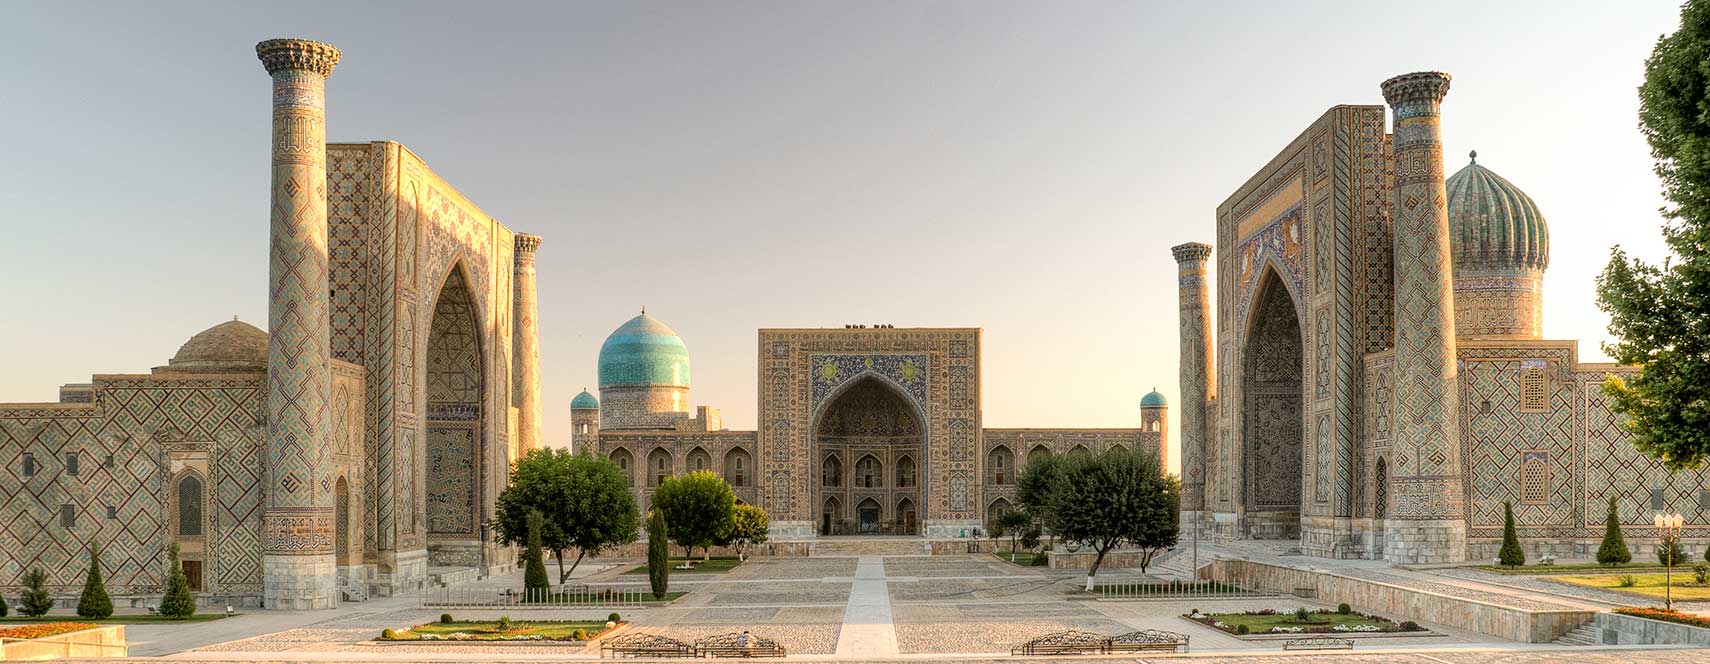 Registan with its three madrasahs in Samarkand